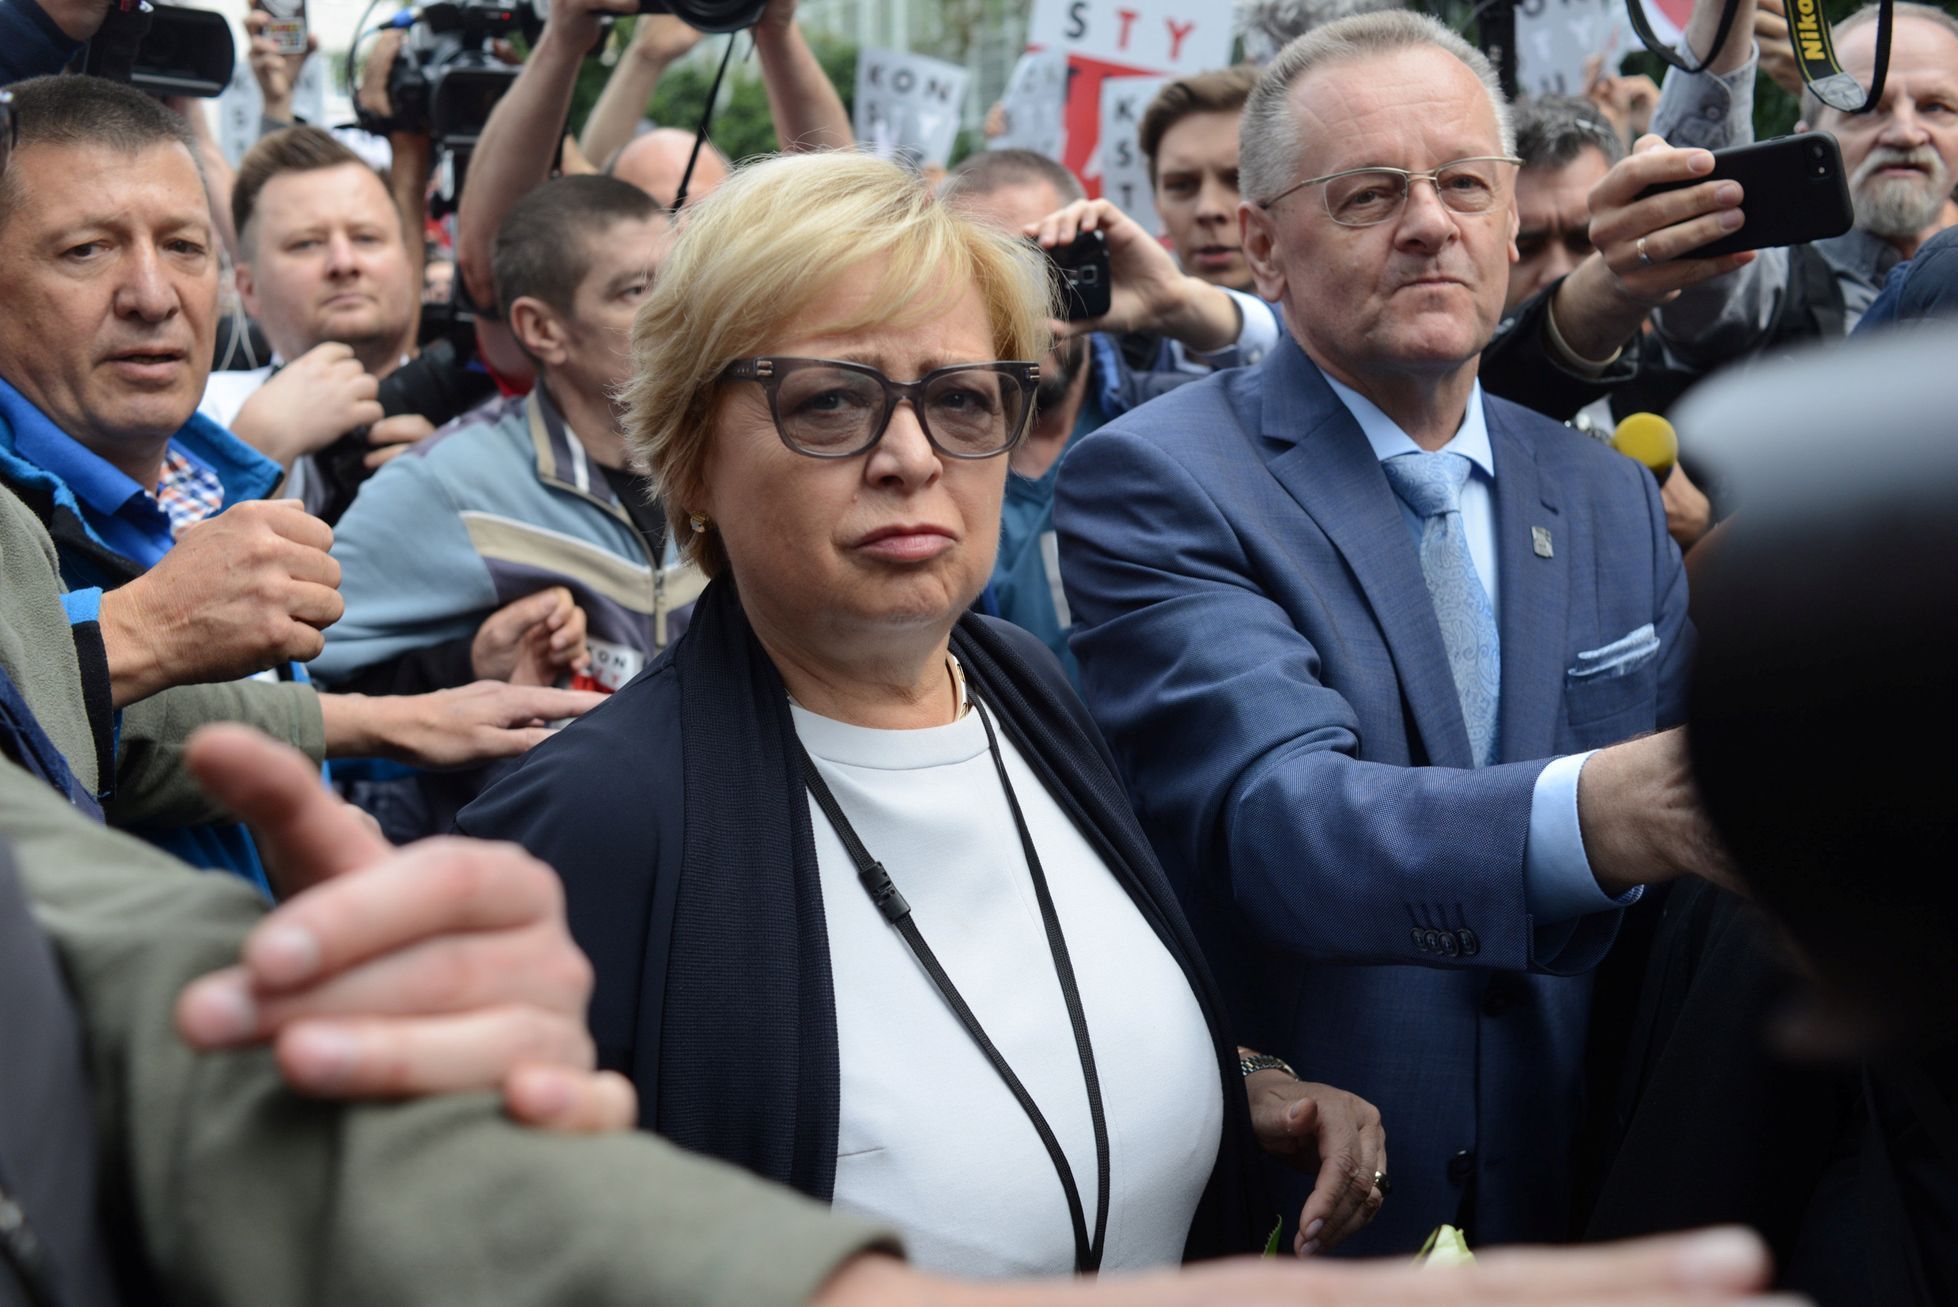 Šéfka polského Nejvyššího soudu Malgorzata Gersdorfová přišla do práce i přesto, že byla de facto odvolaná.